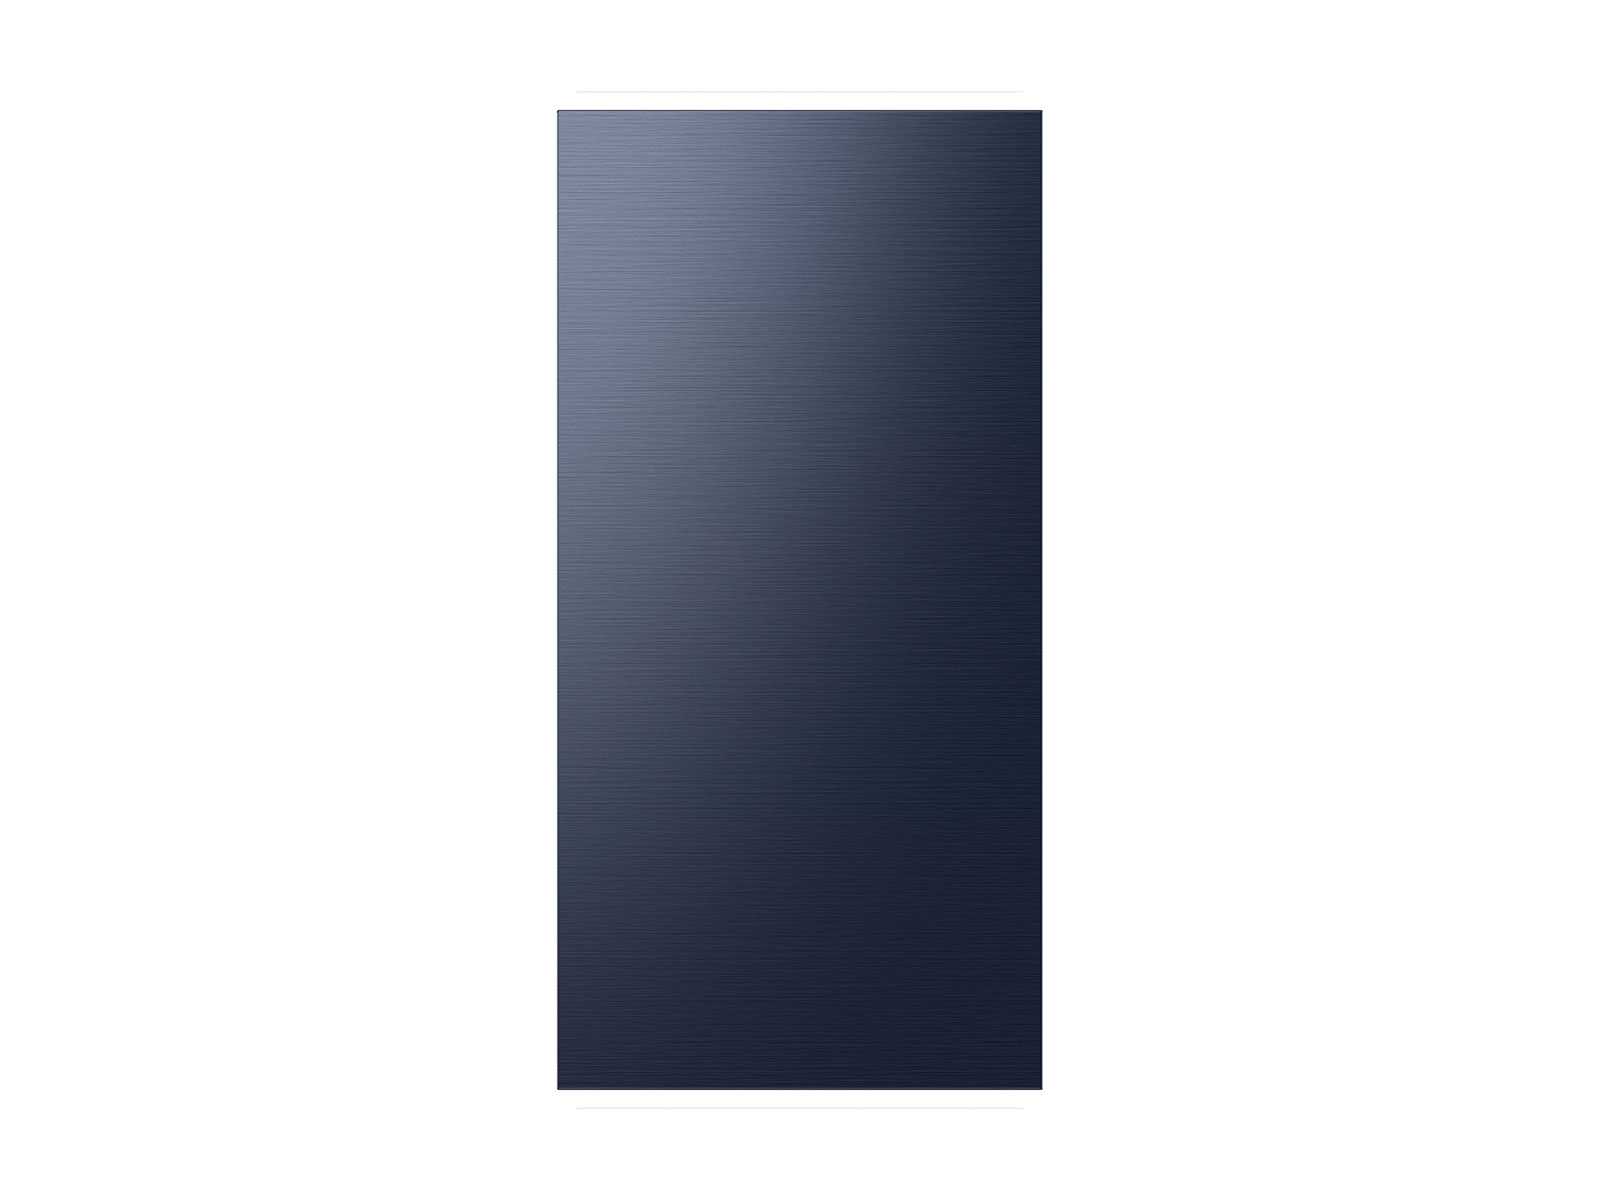 Photos - Fridge Samsung Bespoke 4-Door French Door Refrigerator Panel in Navy Blue Steel  